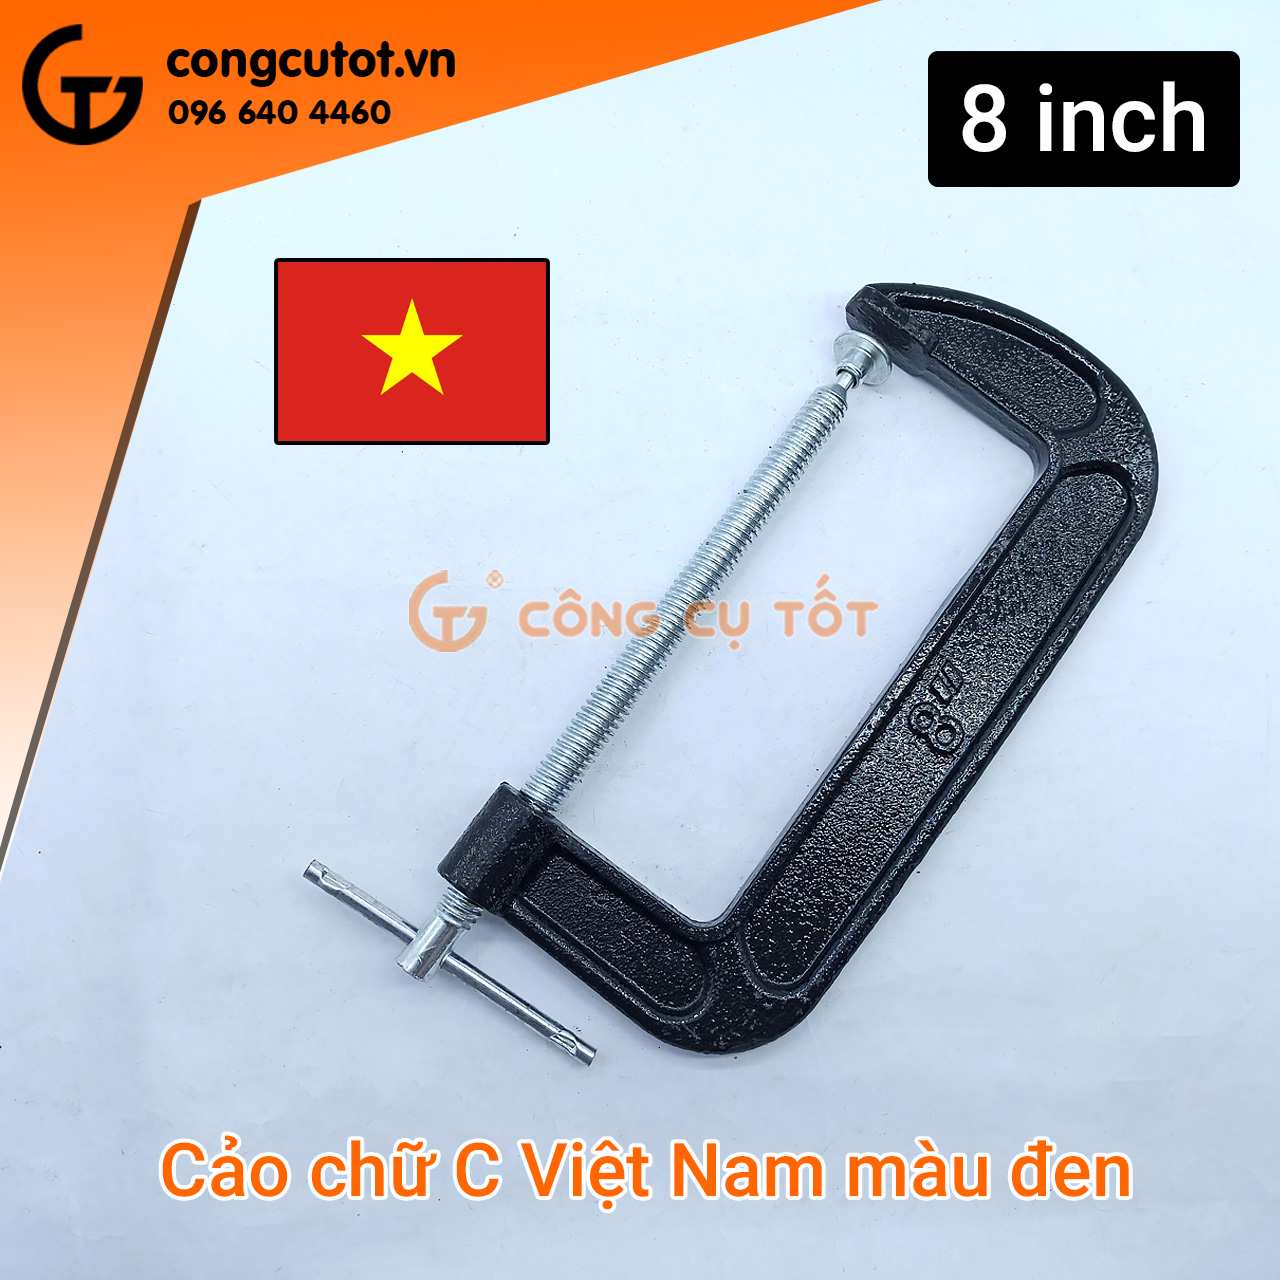 Cảo chữ C Việt Nam màu đen 8 inch